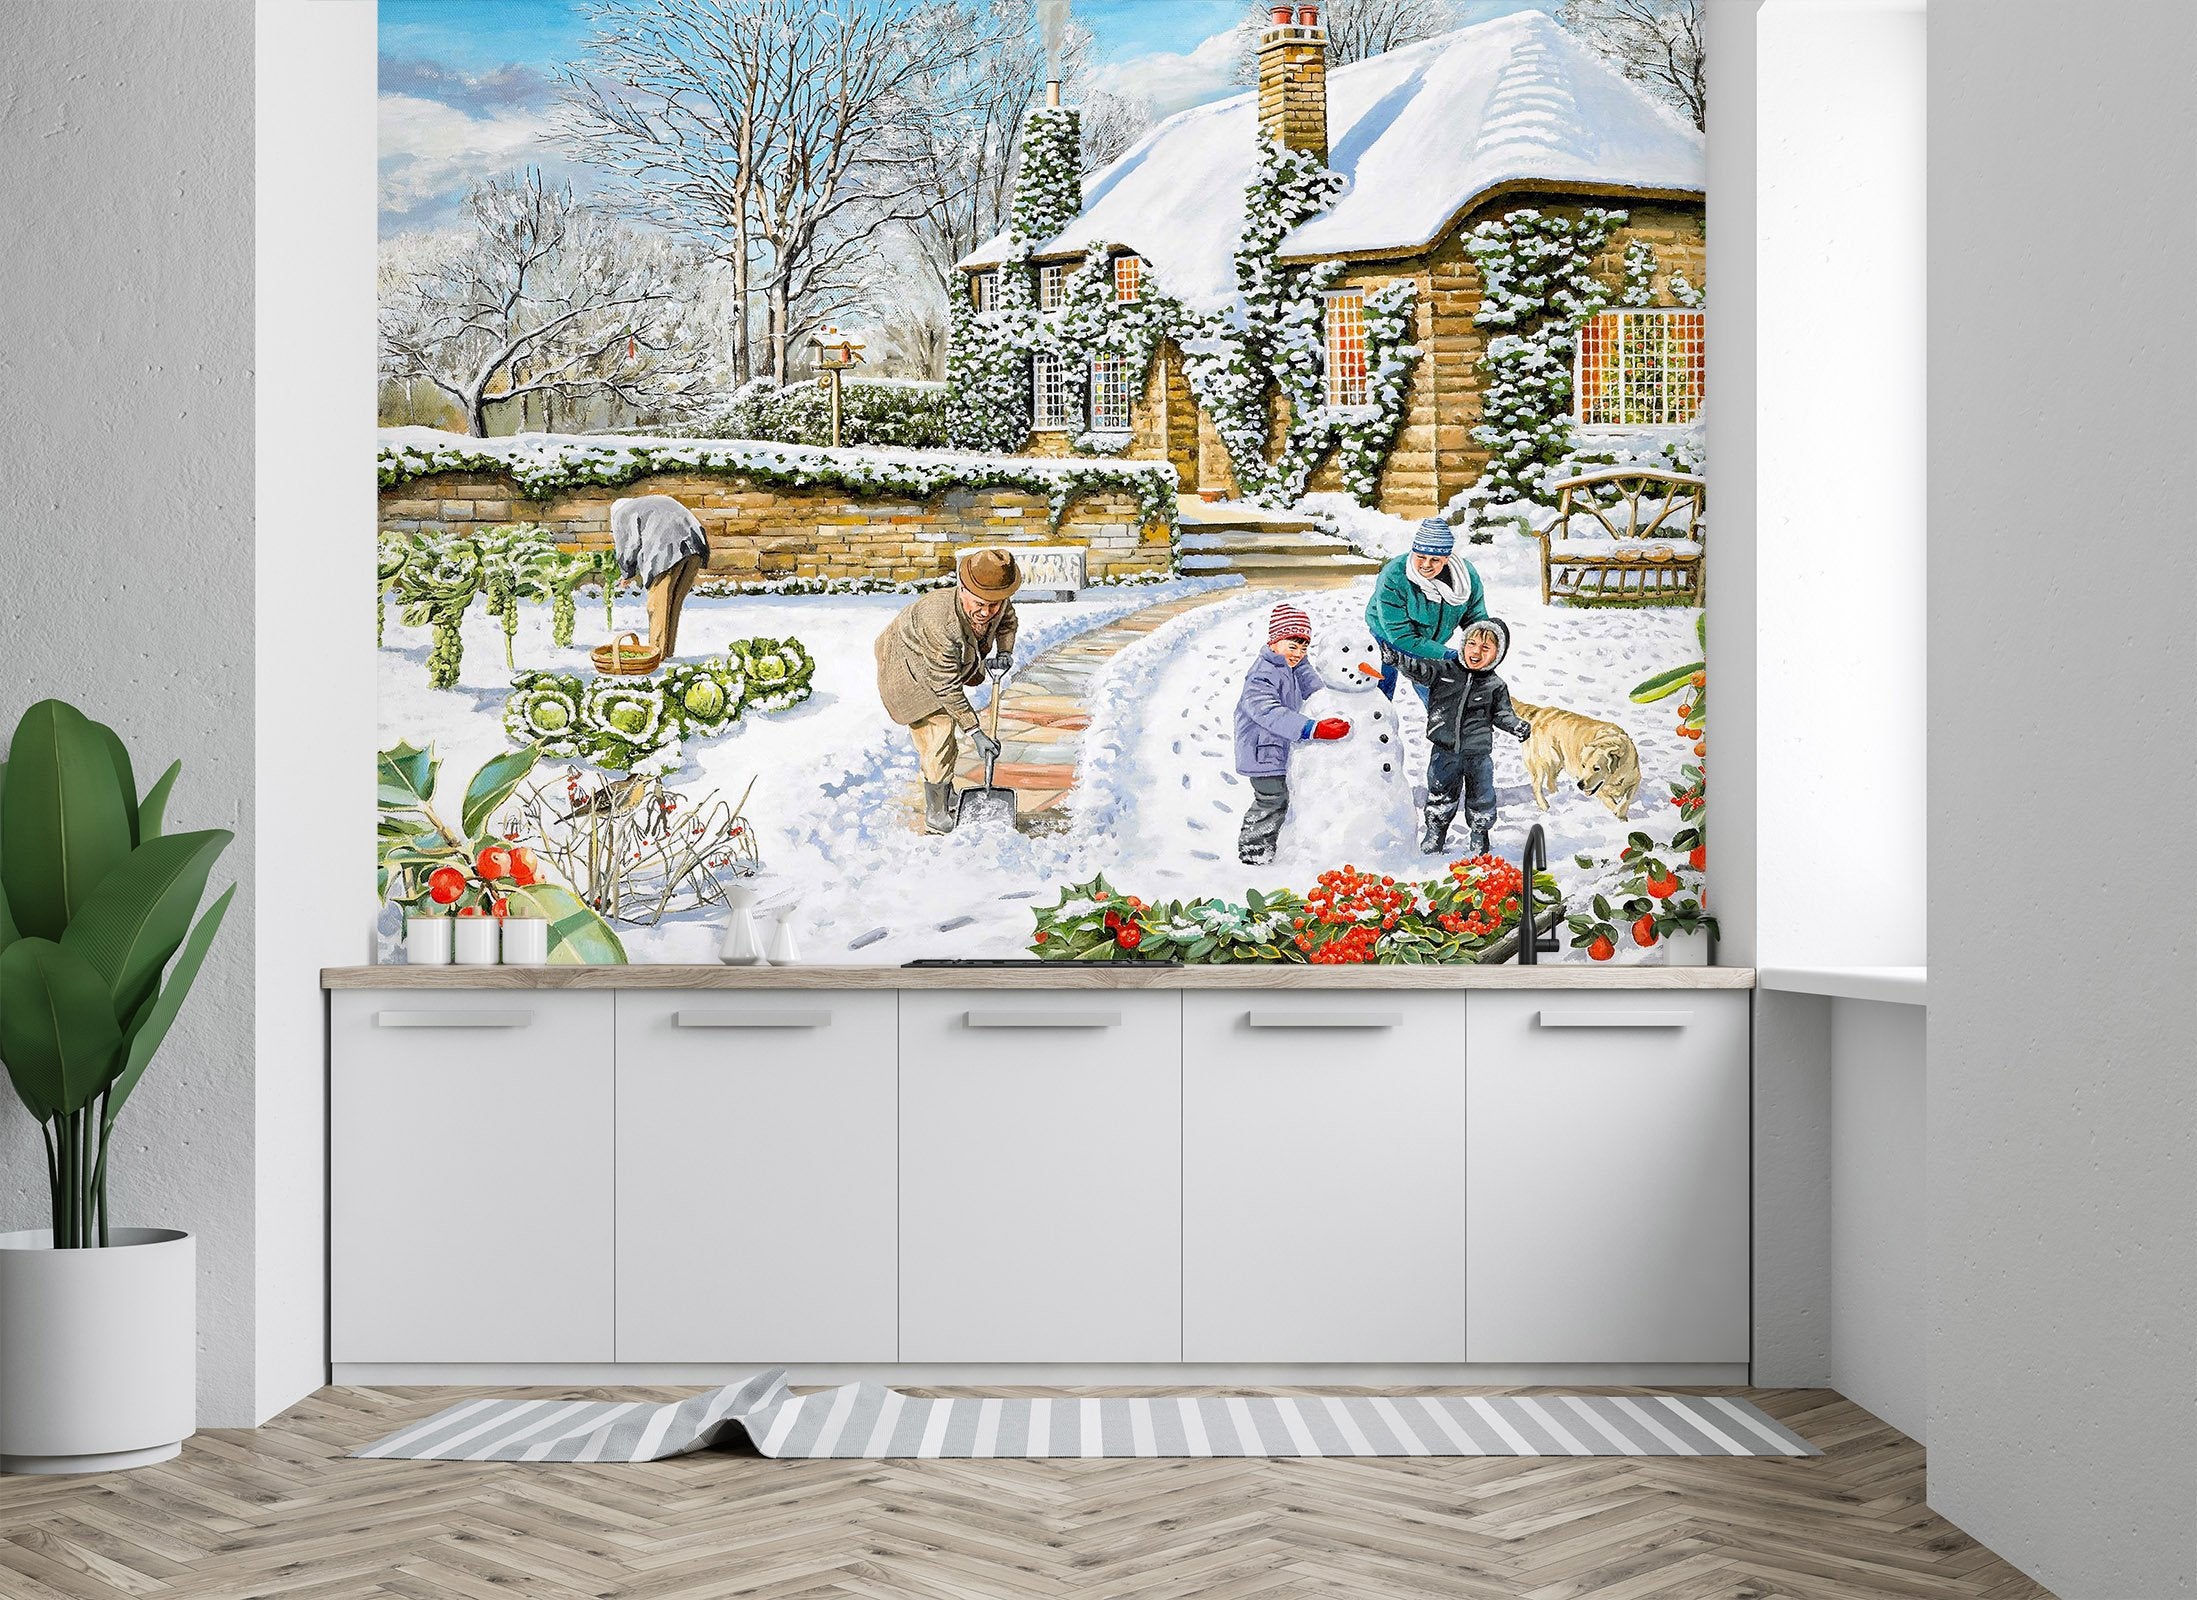 3D A Winter Garden 1003 Trevor Mitchell Wall Mural Wall Murals Wallpaper AJ Wallpaper 2 